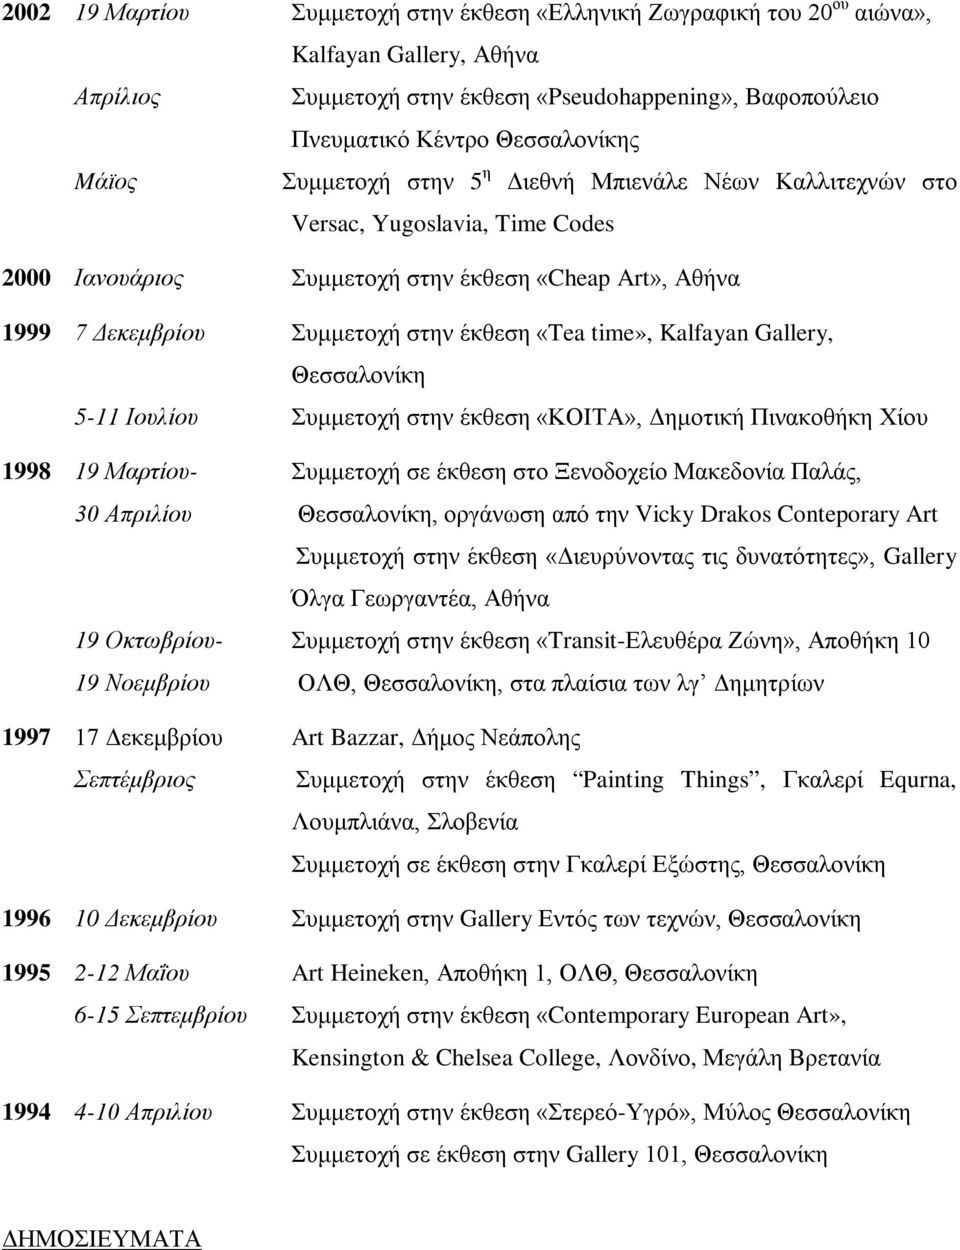 Kalfayan Gallery, Θεσσαλονίκη 5-11 Ιουλίου Συμμετοχή στην έκθεση «ΚΟΙΤΑ», Δημοτική Πινακοθήκη Χίου 1998 19 Μαρτίου- Συμμετοχή σε έκθεση στο Ξενοδοχείο Μακεδονία Παλάς, 30 Απριλίου Θεσσαλονίκη,